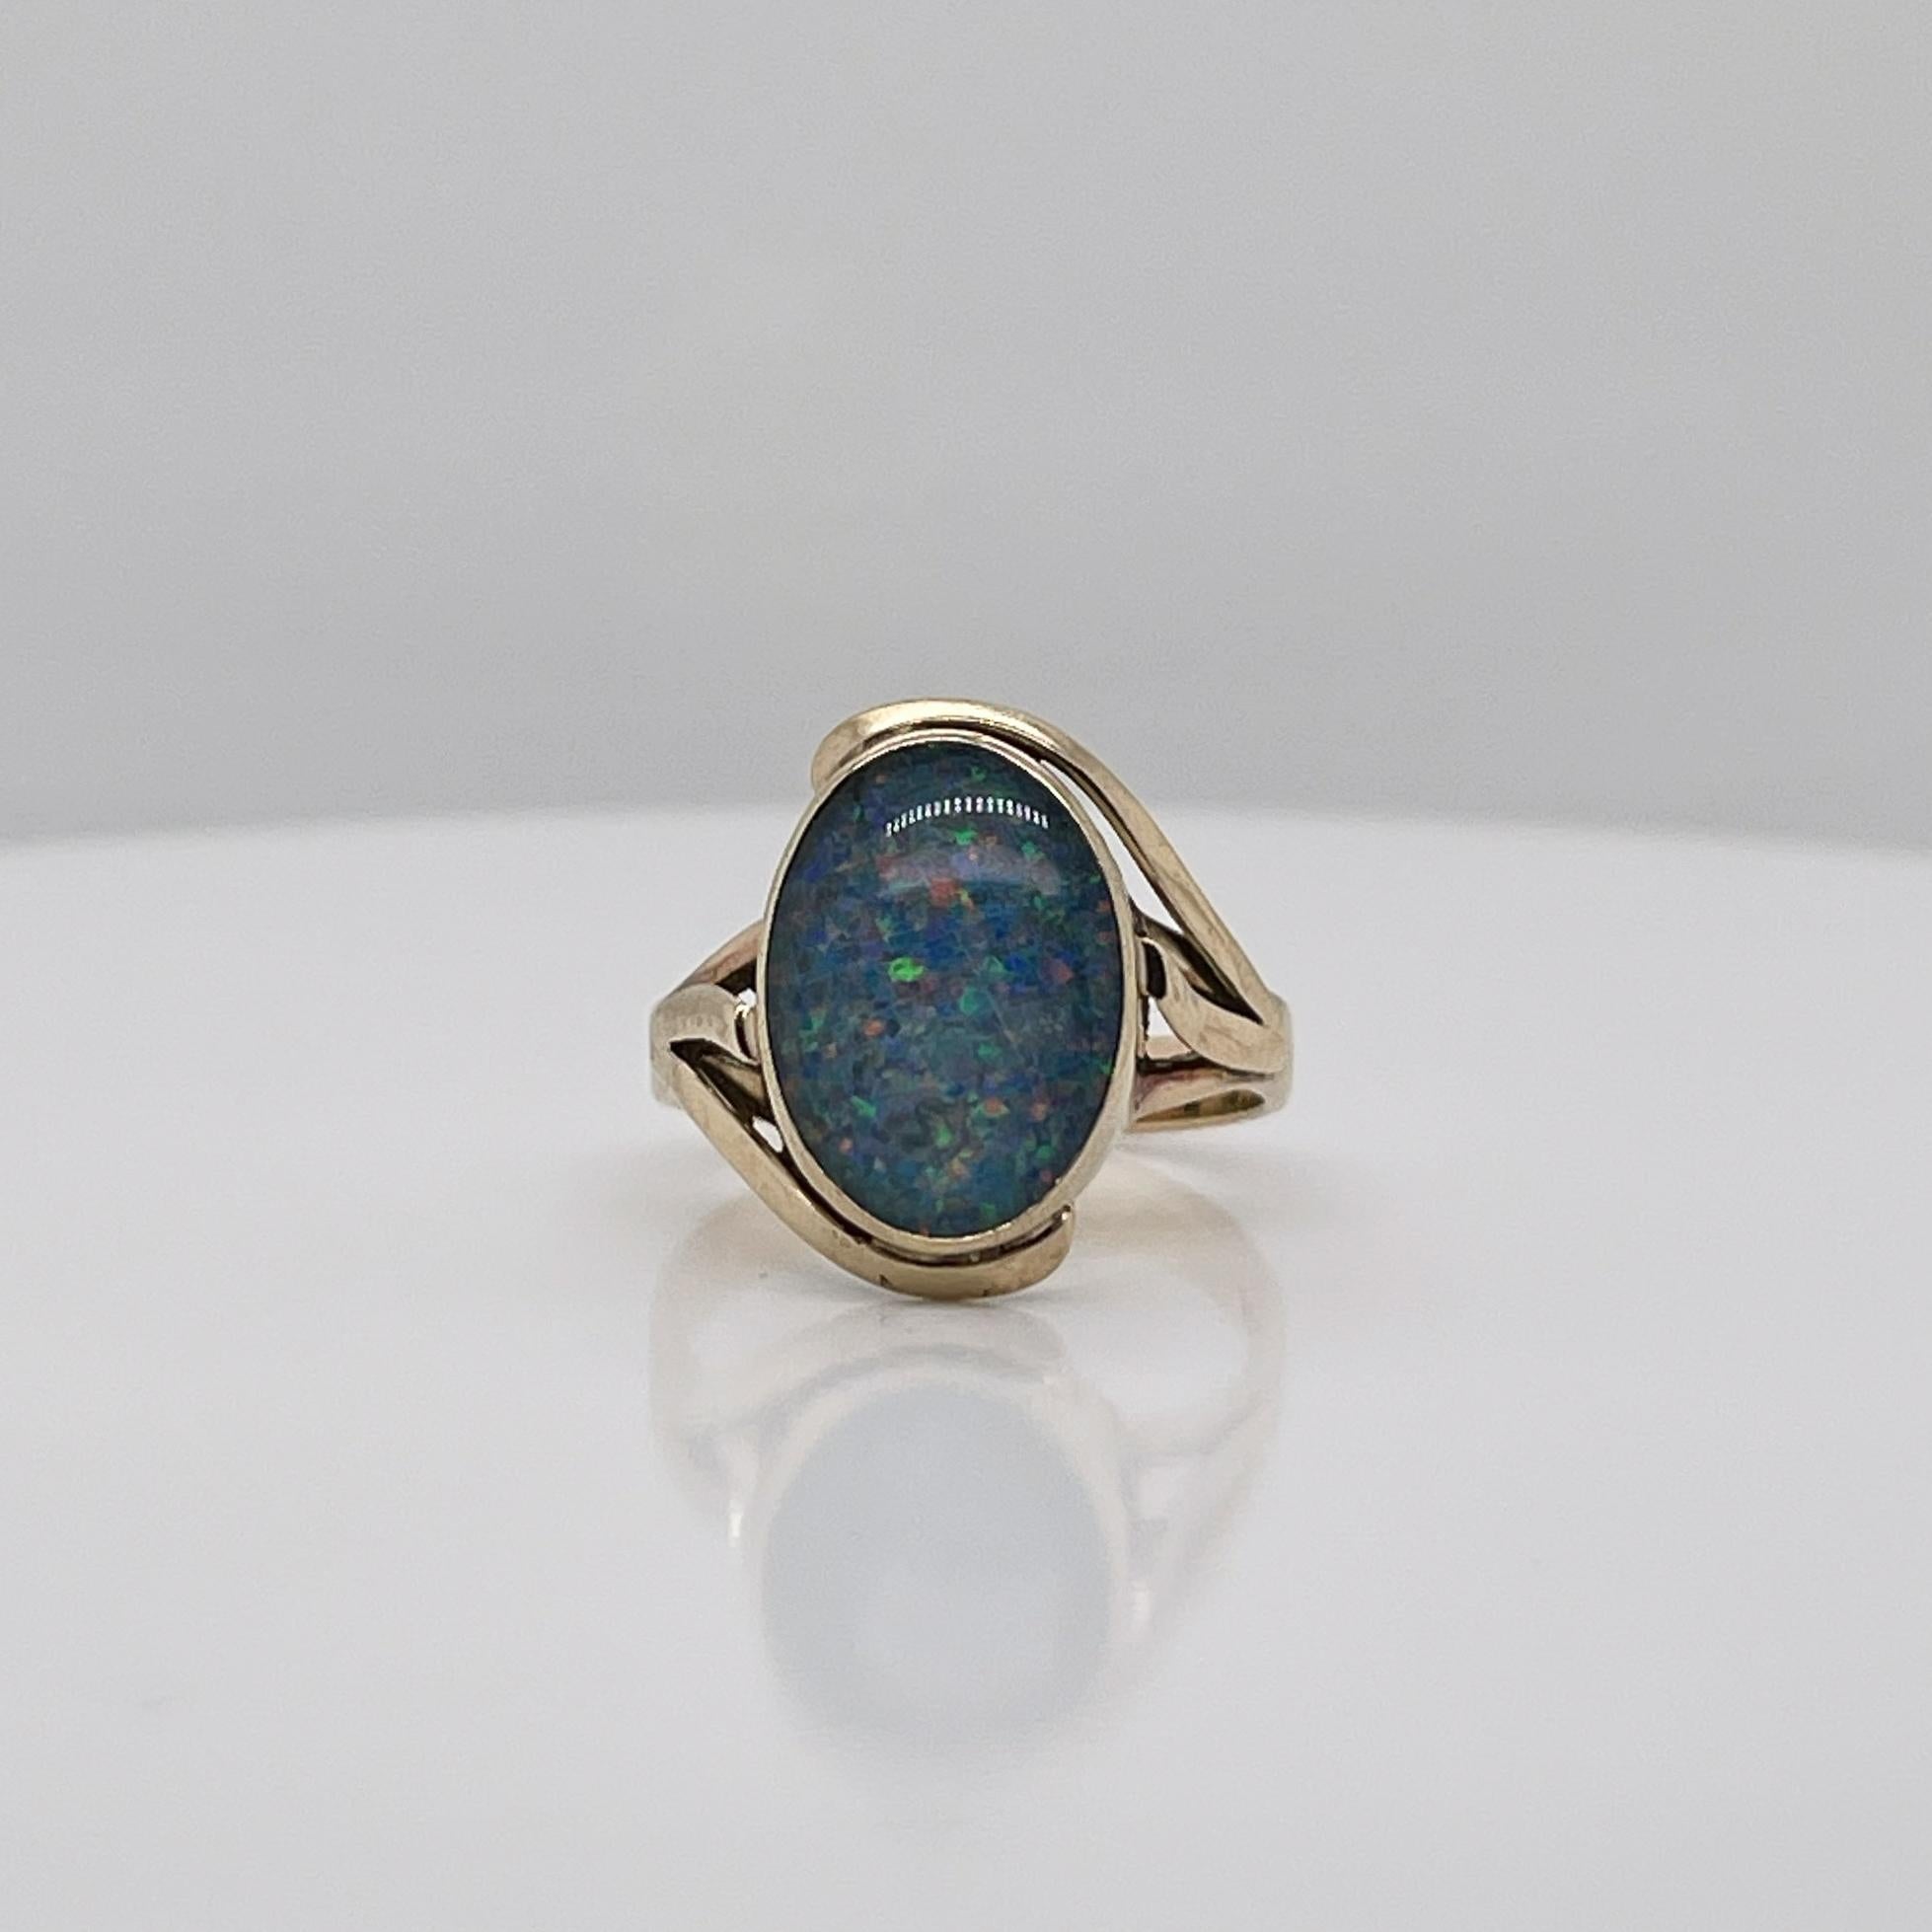 Ein sehr schöner Vintage-Ring aus Gold und Opal im Siegelstil.

Die ovale Opal-Doublet-Cabochon-Lünette ist in 9 Karat Gold gefasst. 

Ein einfacher großartiger Ring!

Datum:
20. Jahrhundert

Allgemeiner Zustand:
Es befindet sich in einem insgesamt